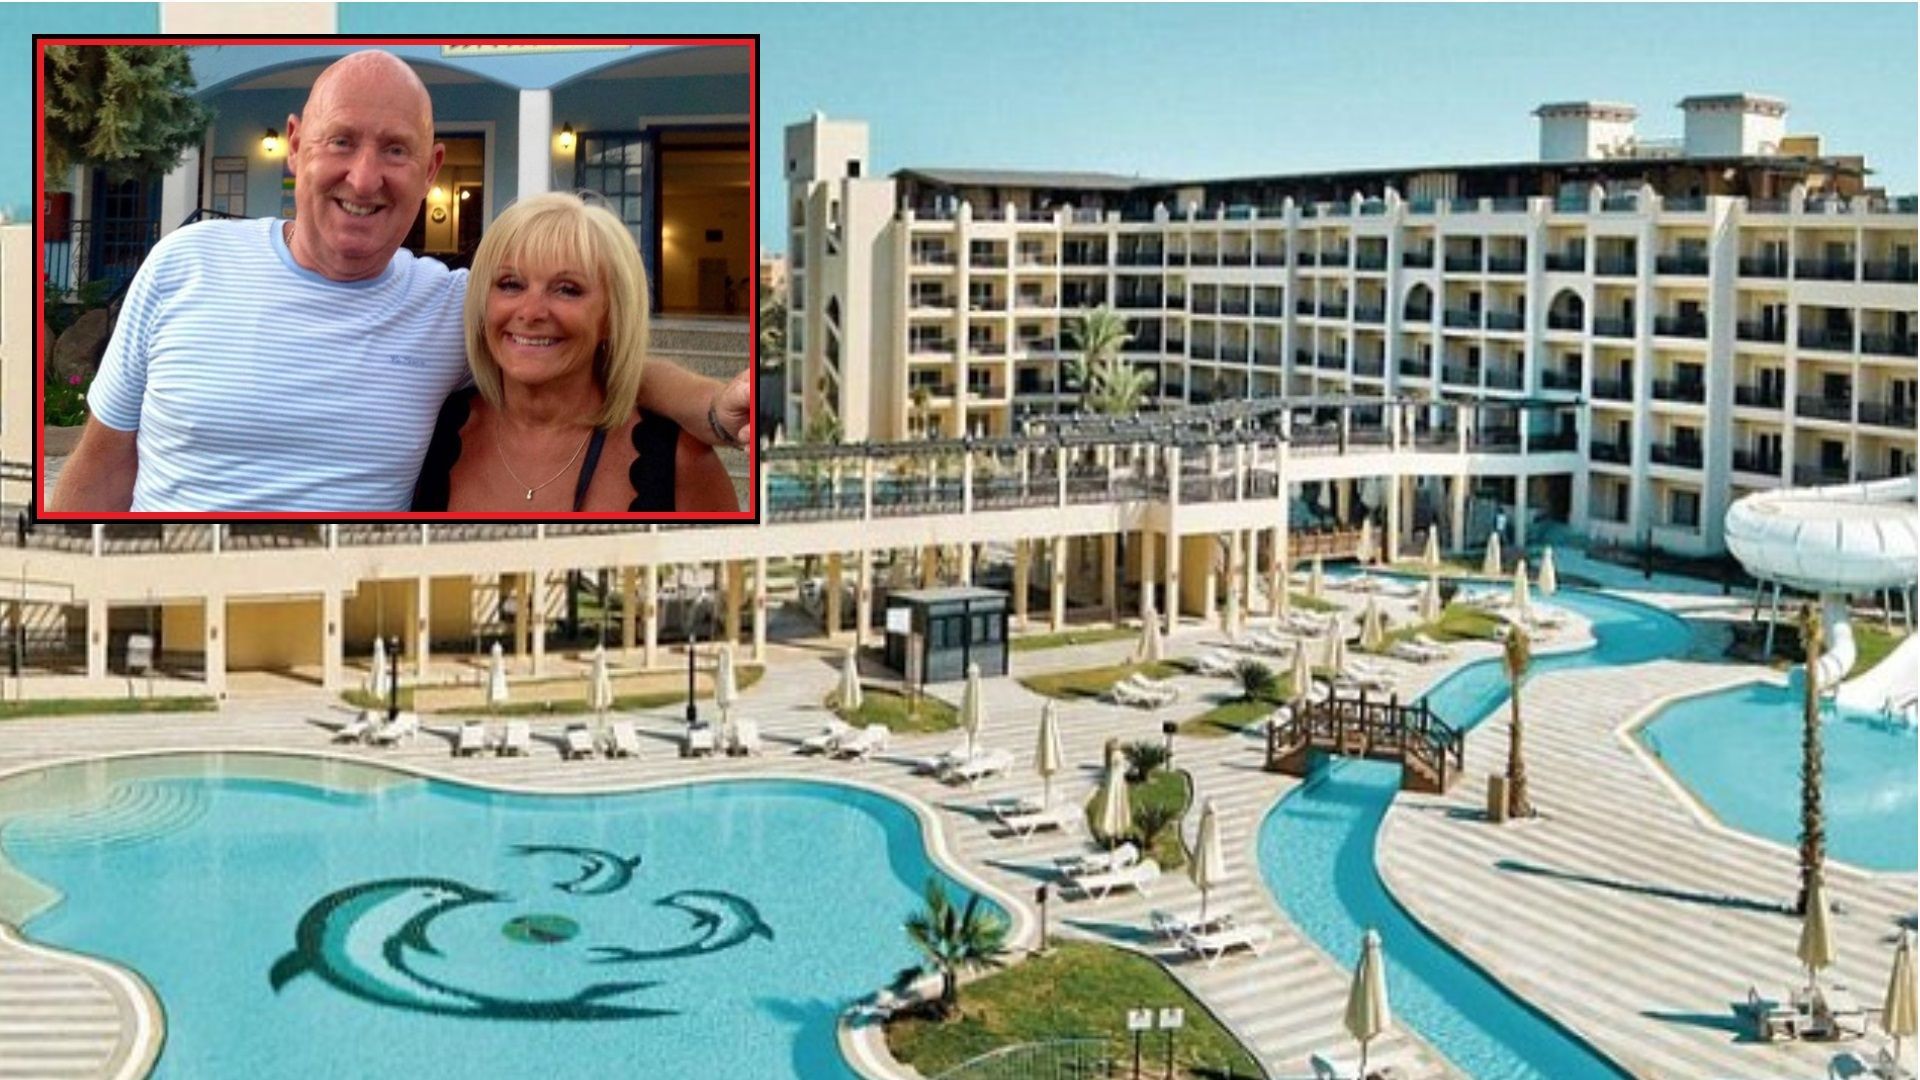 Опразниха топ хотел заради загадъчна смърт на британско семейство